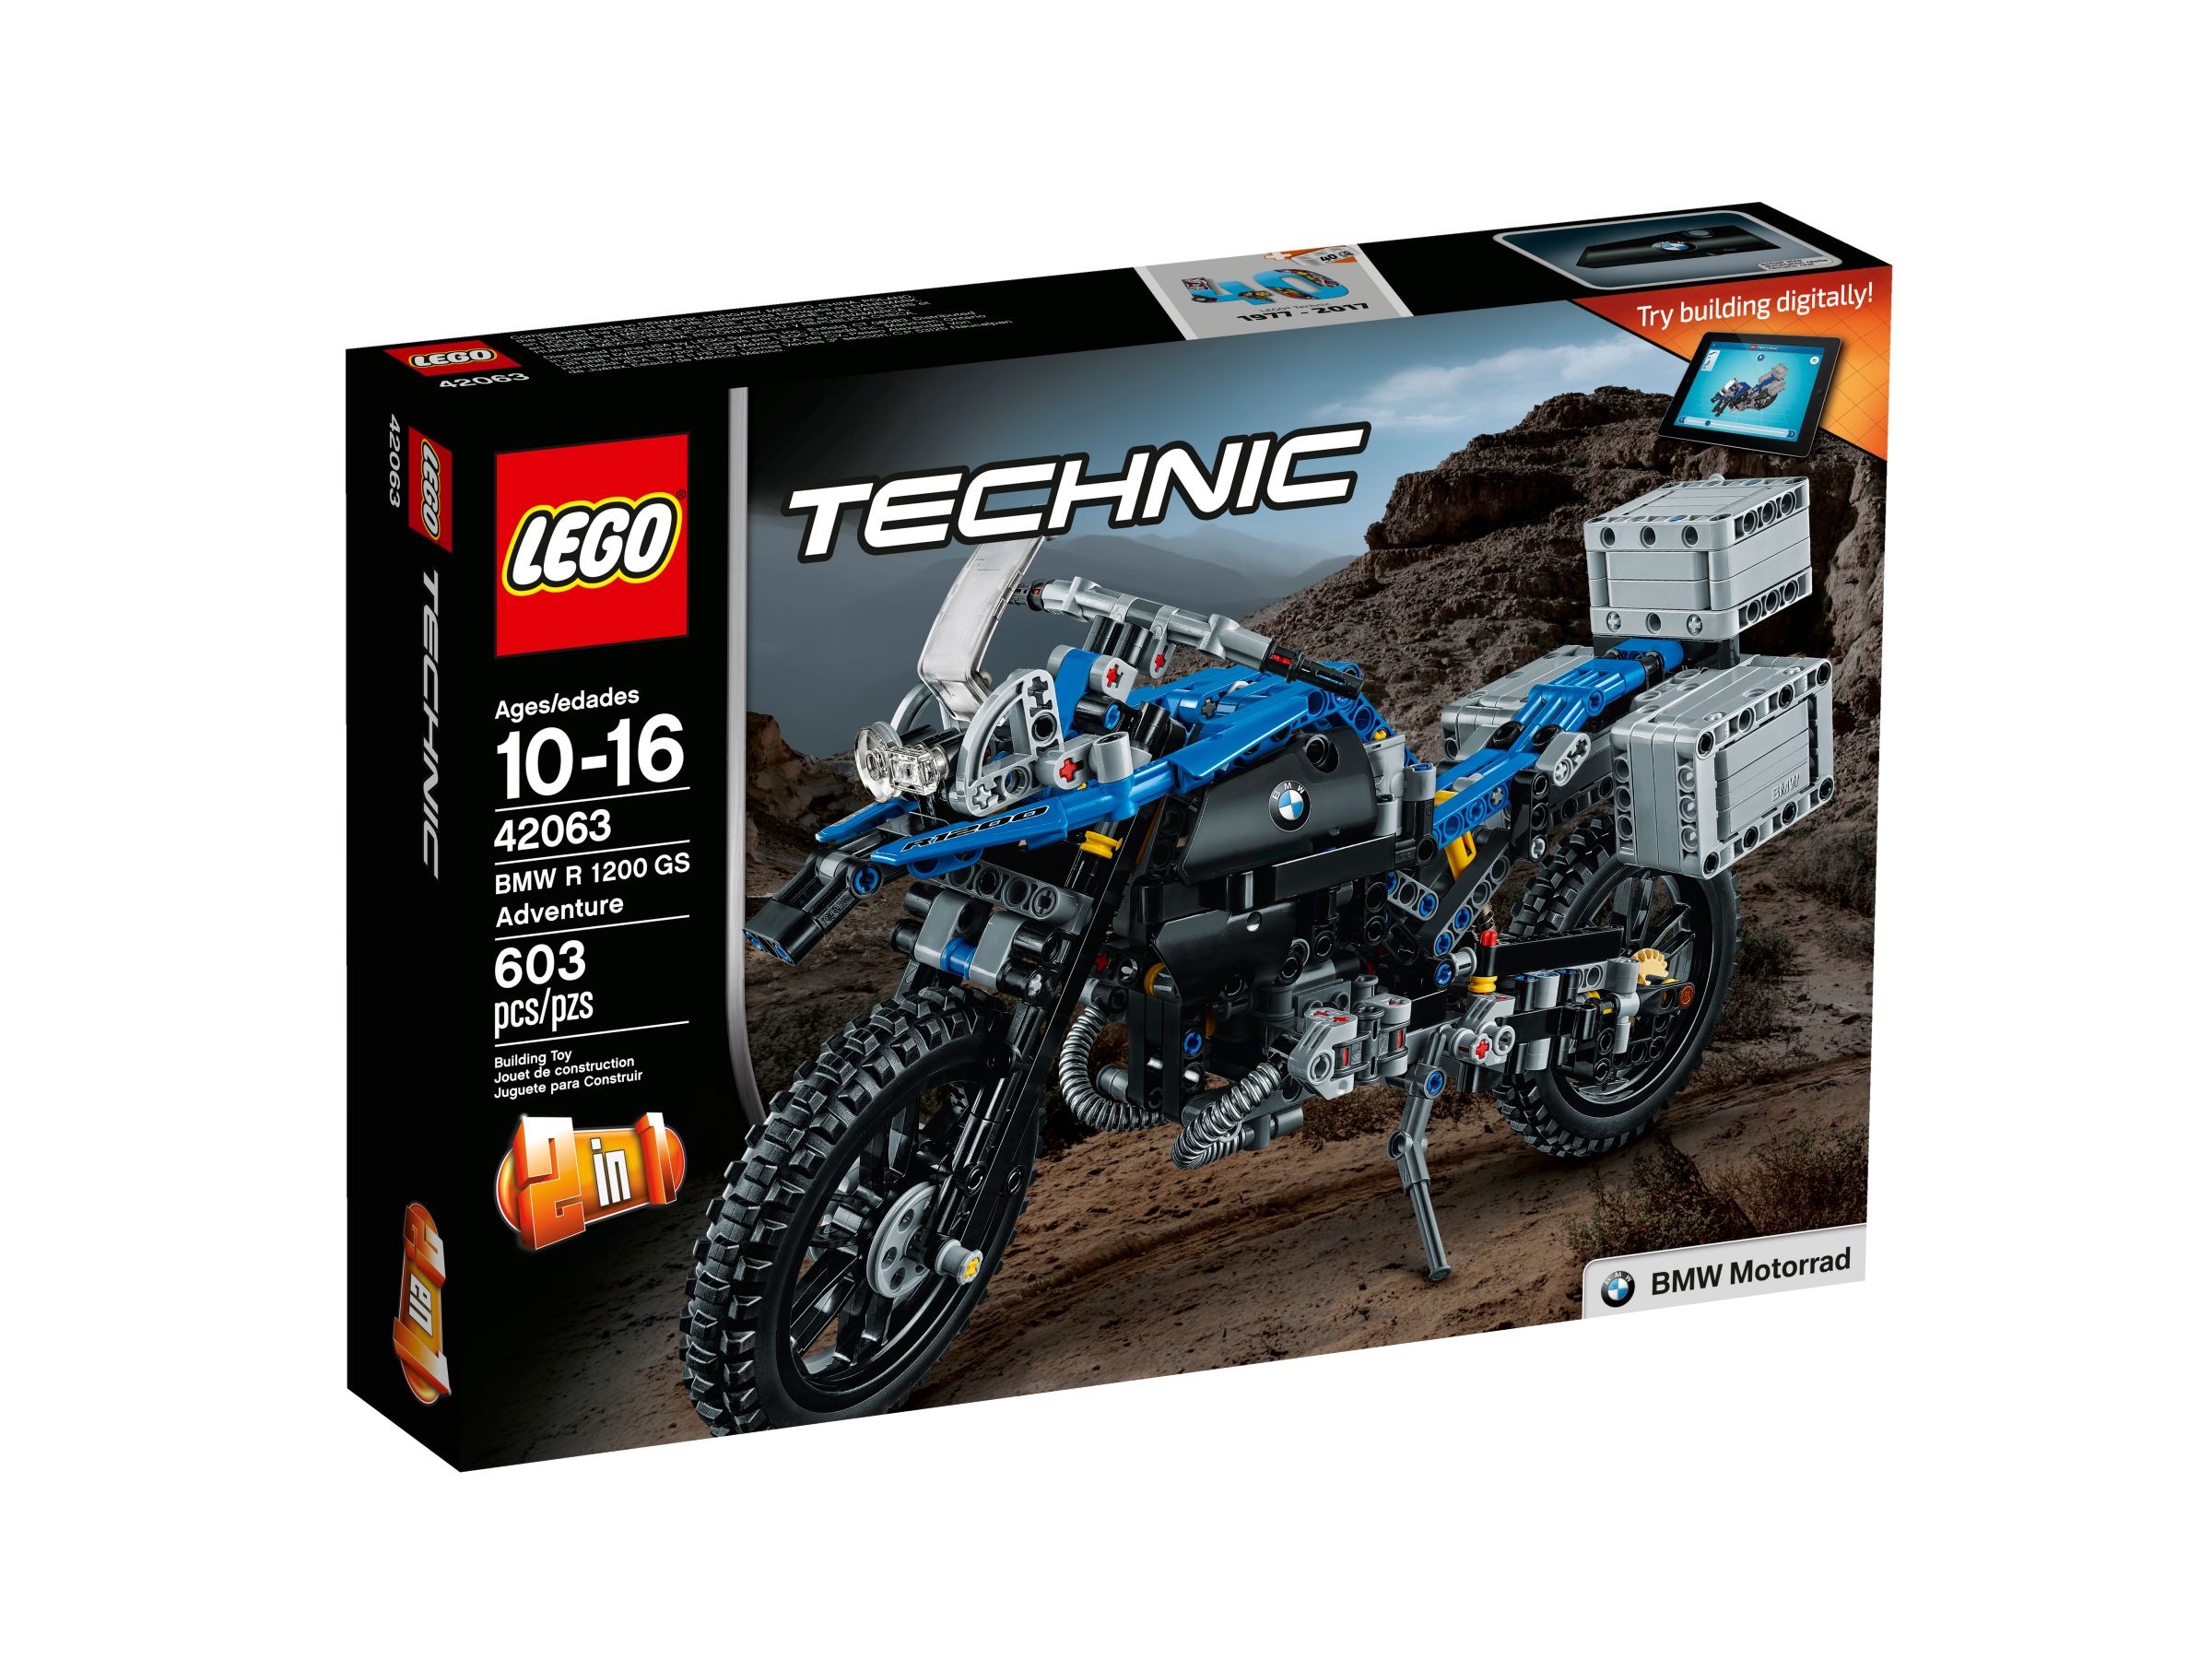 LEGO Technic 42063 BMW R 1200 GS Adventure LEGO_42063_alt1.jpg